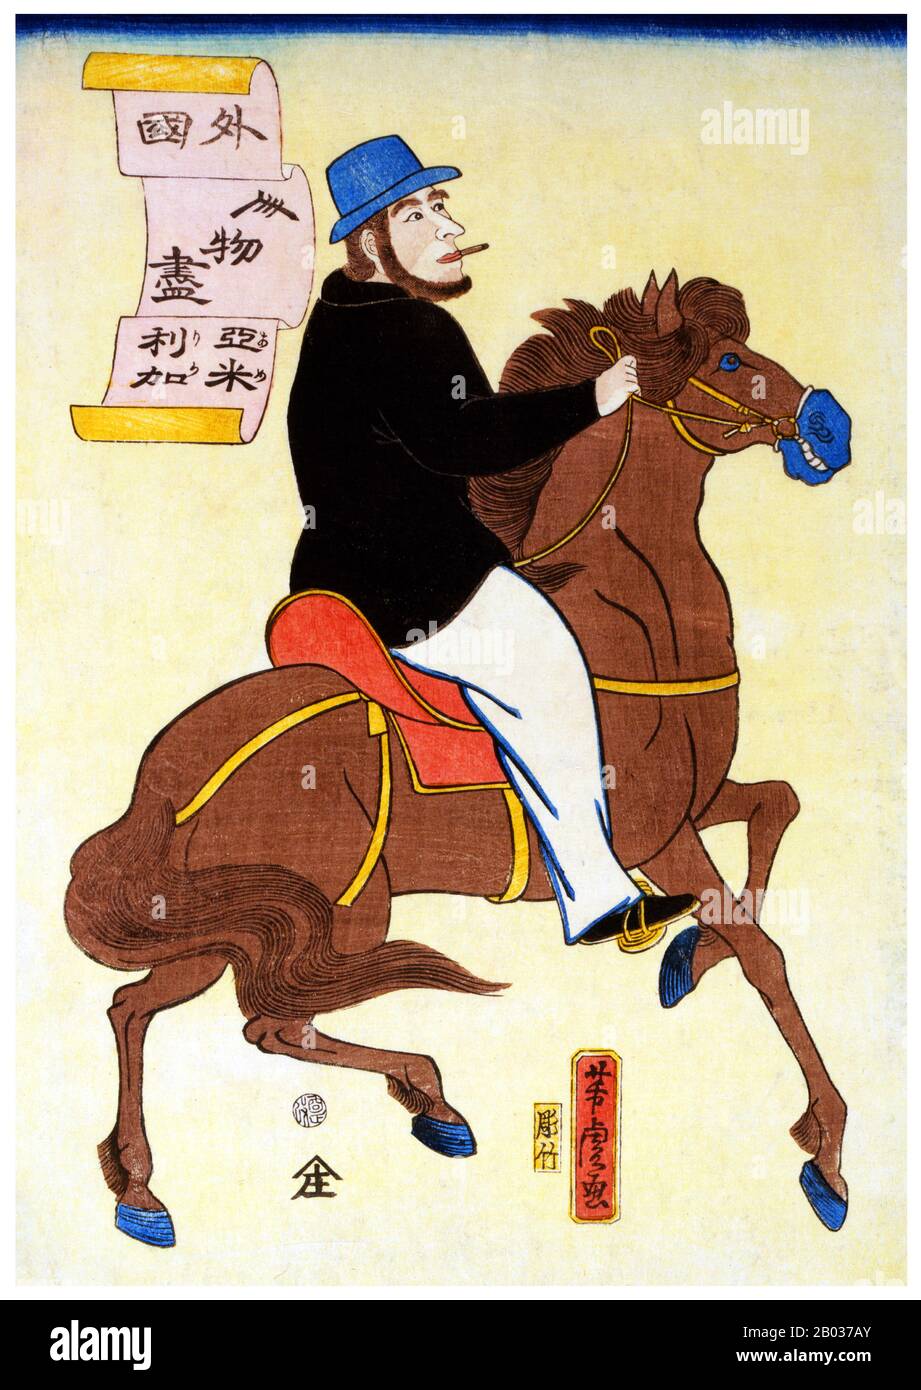 Imprimé bois japonais montrant un homme américain qui fume une cigarette à cheval. Utagawa Yoshitora était un concepteur de gravures japonaises sur bois ukiyo-e et un illustrateur de livres et de journaux qui était actif d'environ 1850 à environ 1880. Il est né à Edo (Tokyo moderne), mais ni sa date de naissance ni sa date de mort ne sont connues. Il a été le plus ancien élève d'Utagawa Kuniyoshi qui a excellé dans des reproductions de guerriers, d'acteurs kabuki, de belles femmes et d'étrangers (Yokohama-e). Banque D'Images